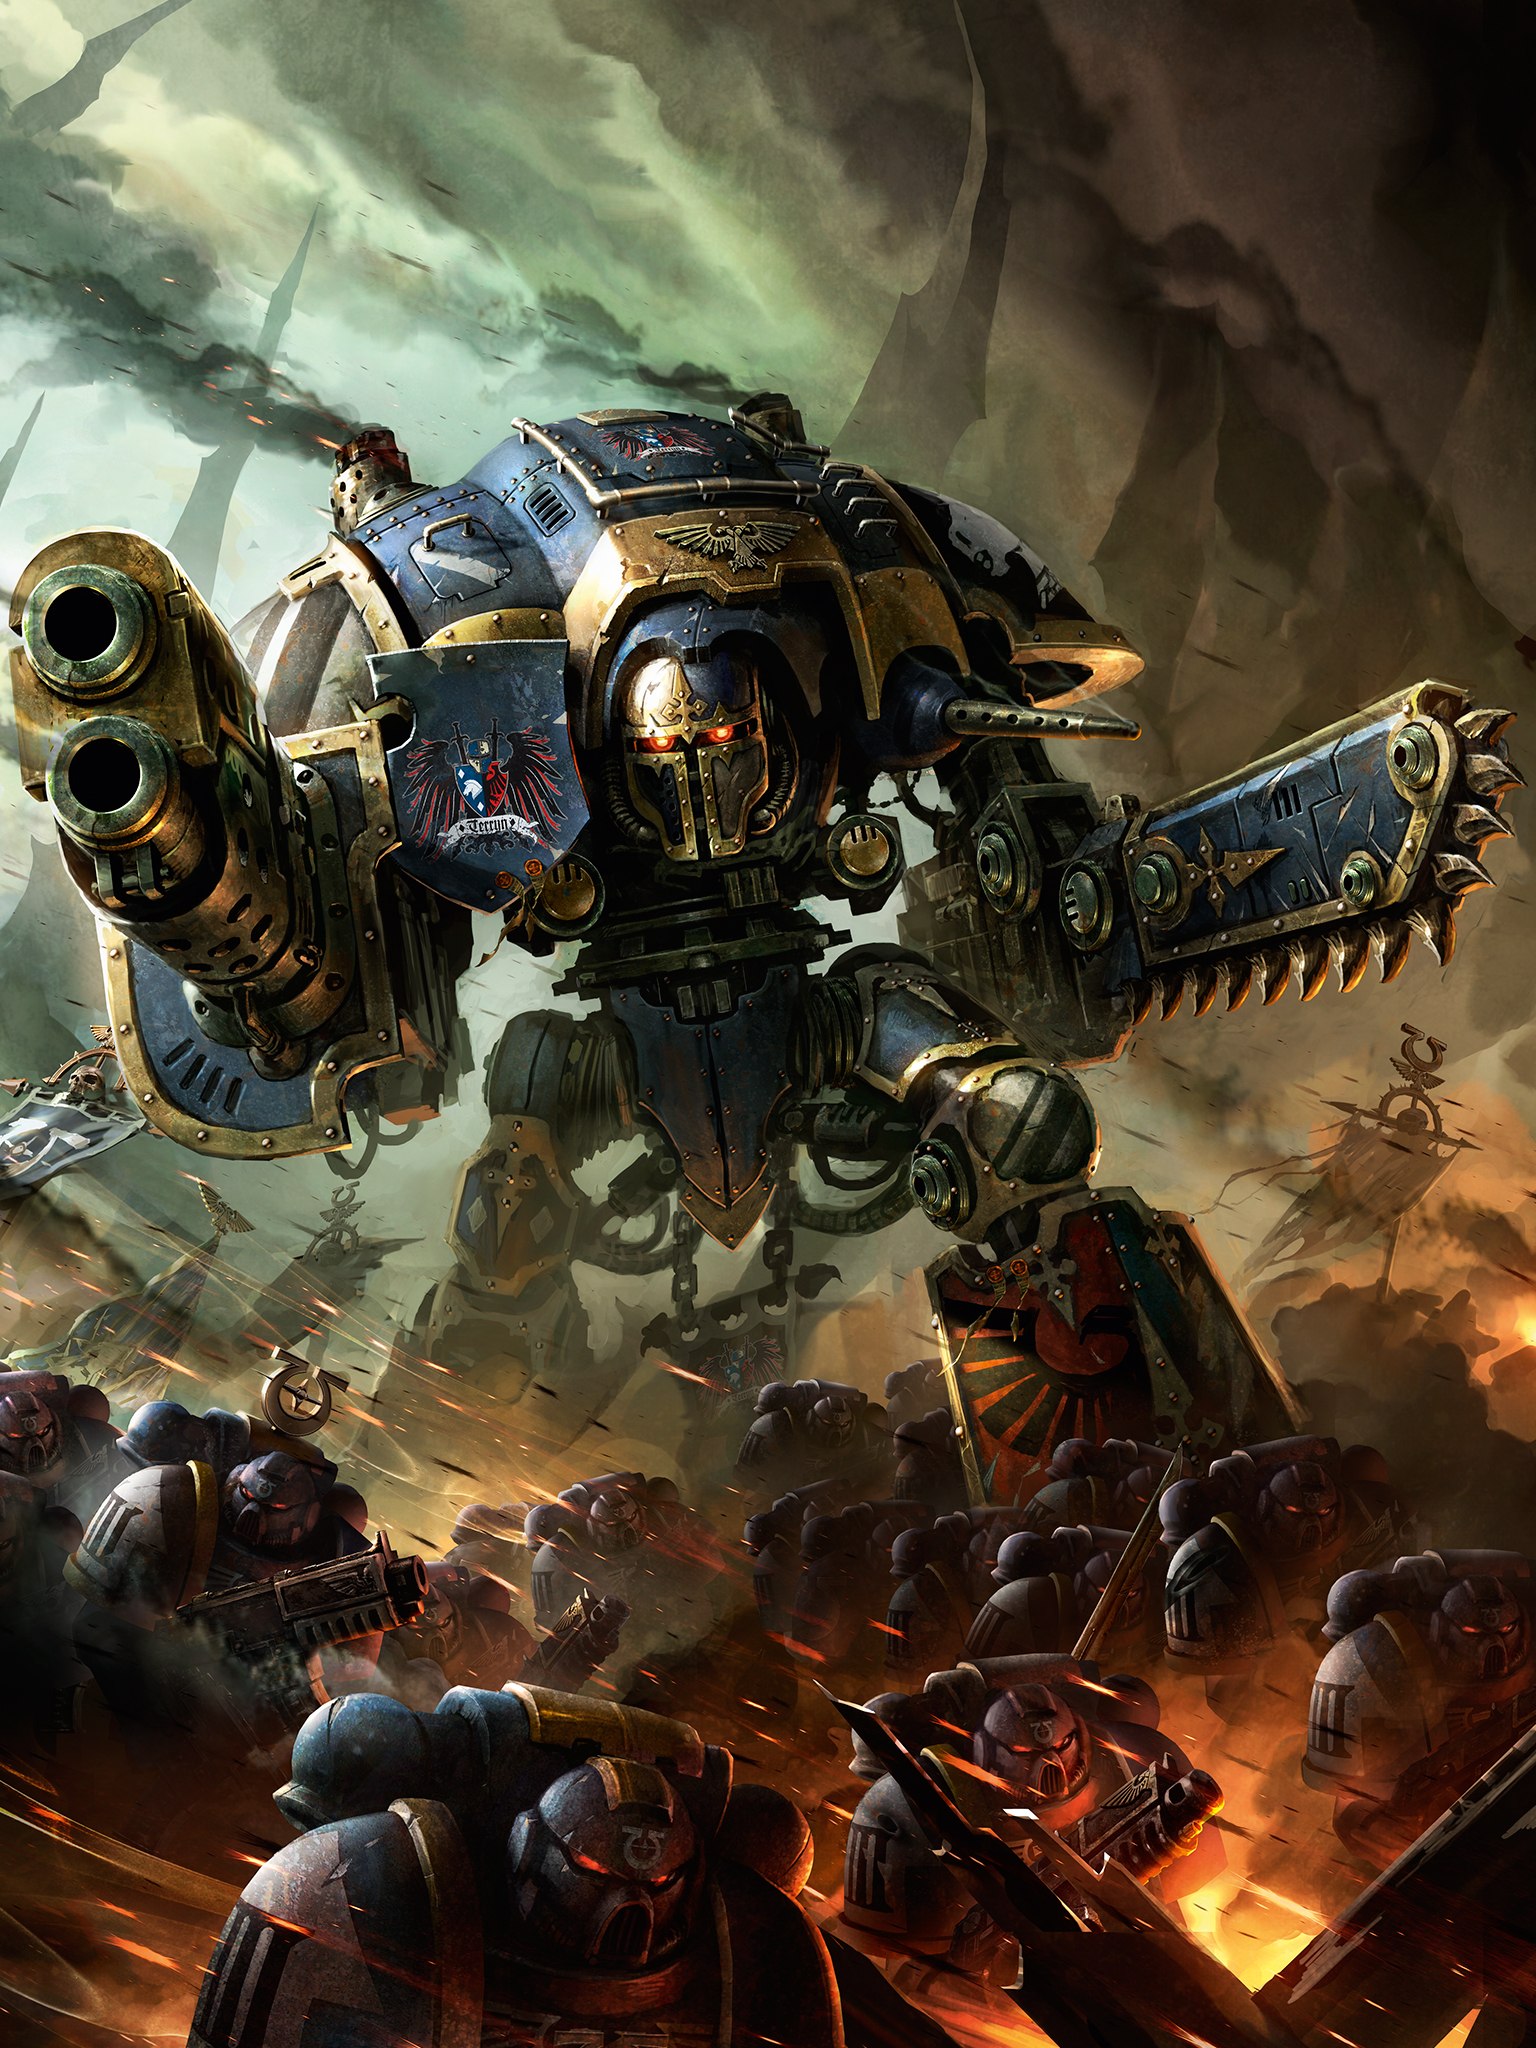 warhammer 40k fondo de pantalla,juego de acción y aventura,cg artwork,mecha,juego de pc,robot